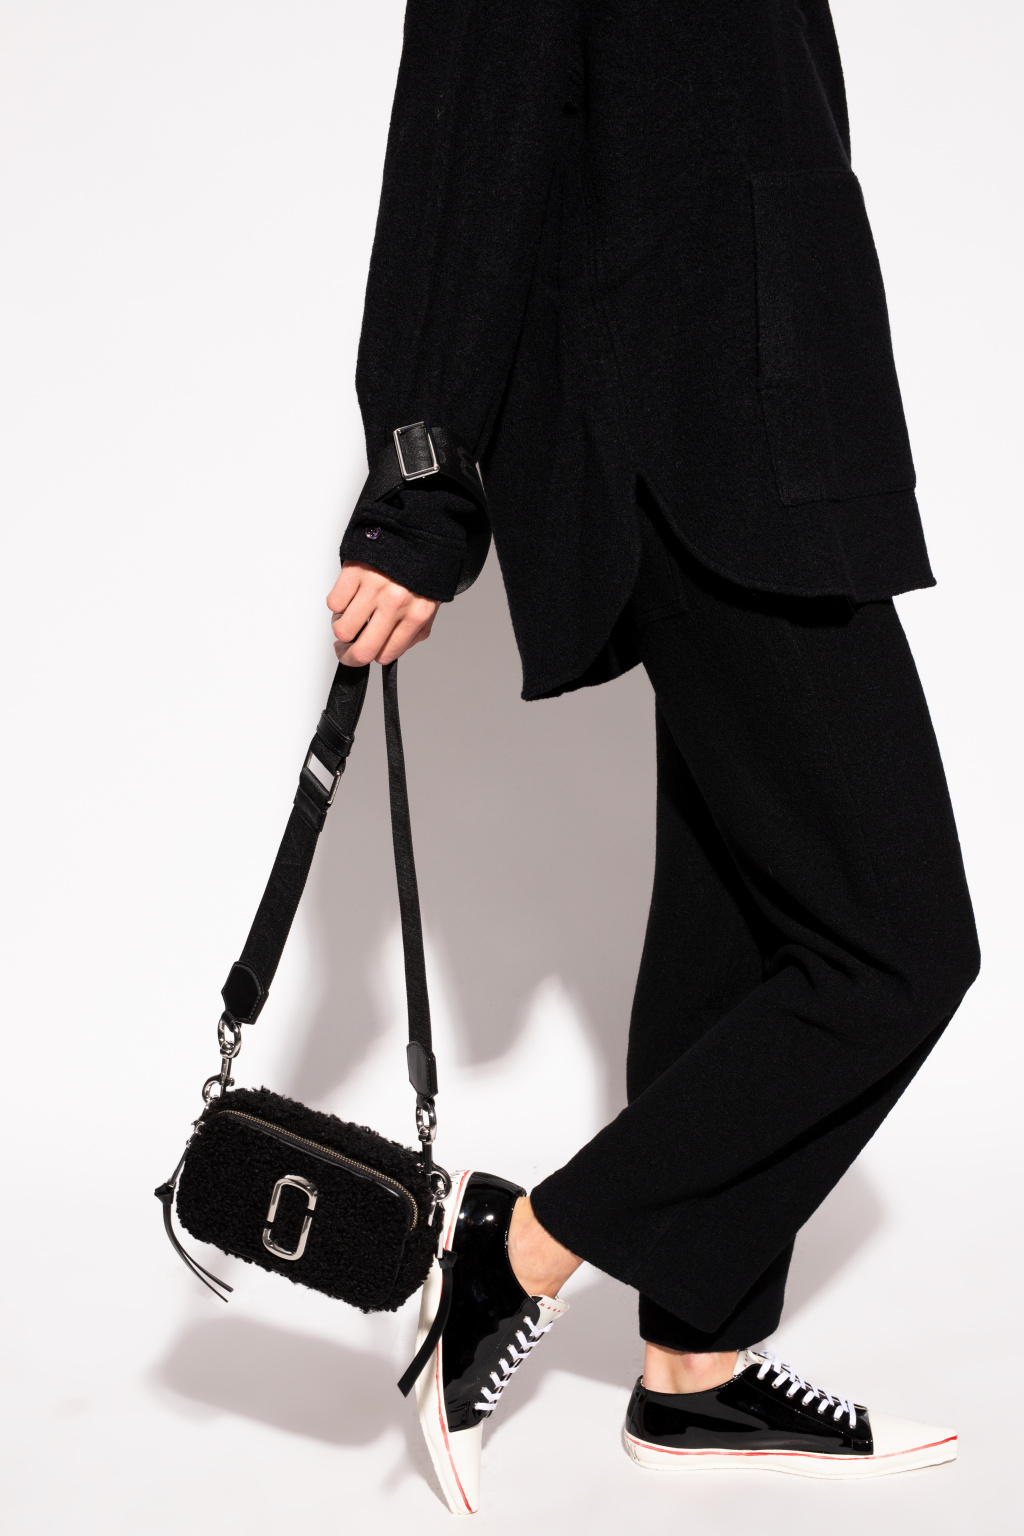 The Marc Jacobs The Snapshot black and orange shoulder bag